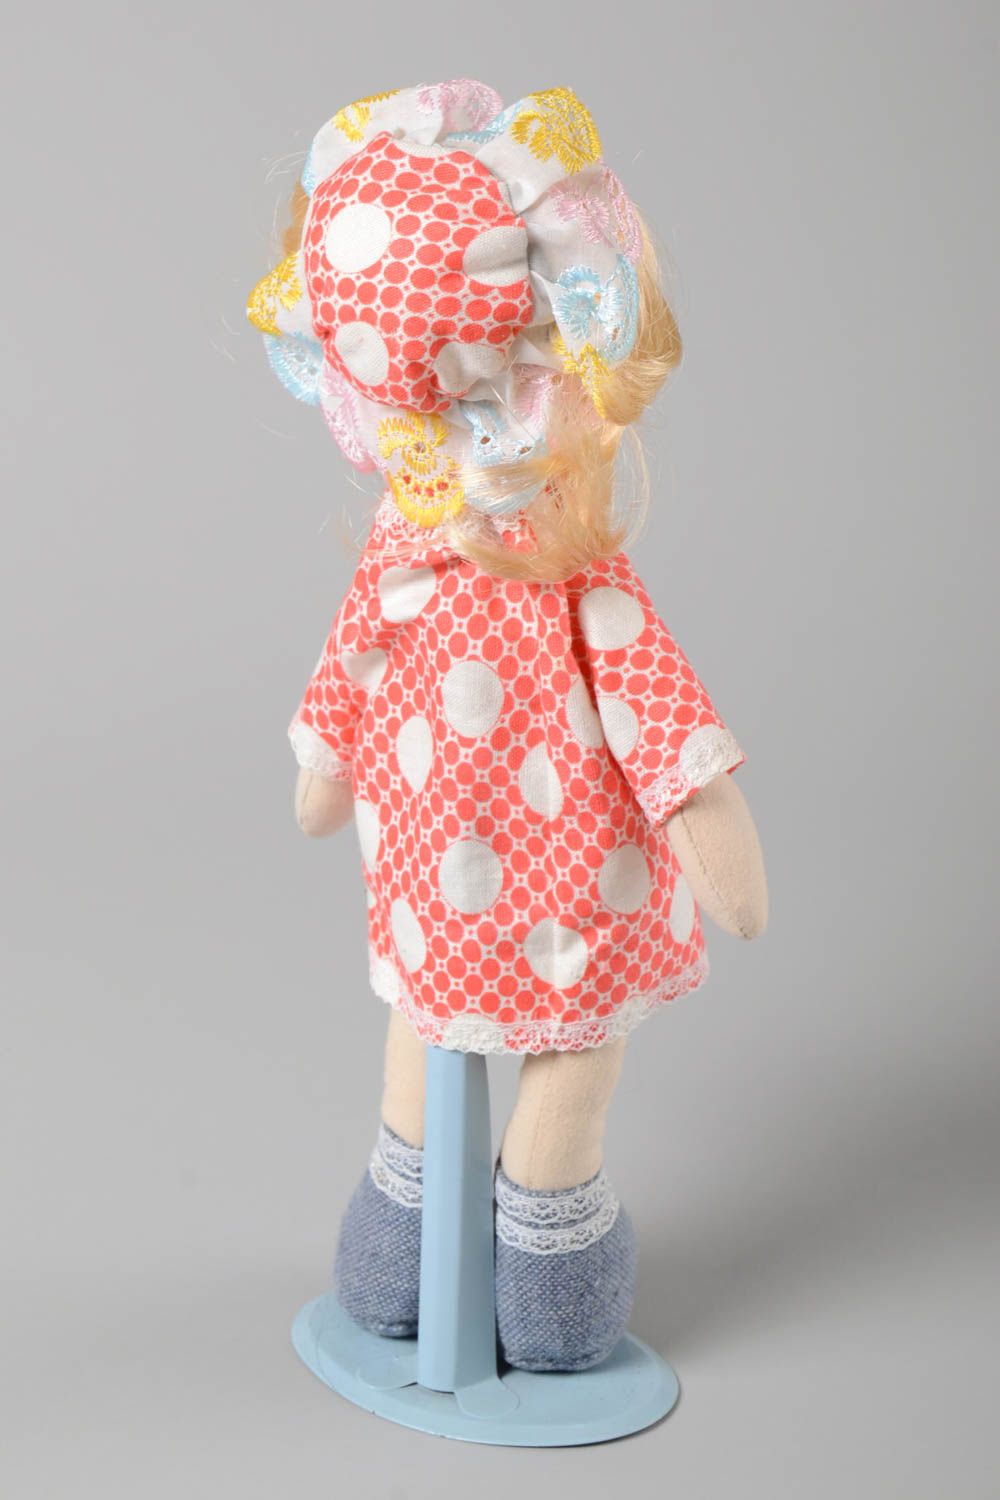 Handmade Kinder Puppe Spielsache für Kinder Deko Puppe Mädchen im roten Kleid foto 4